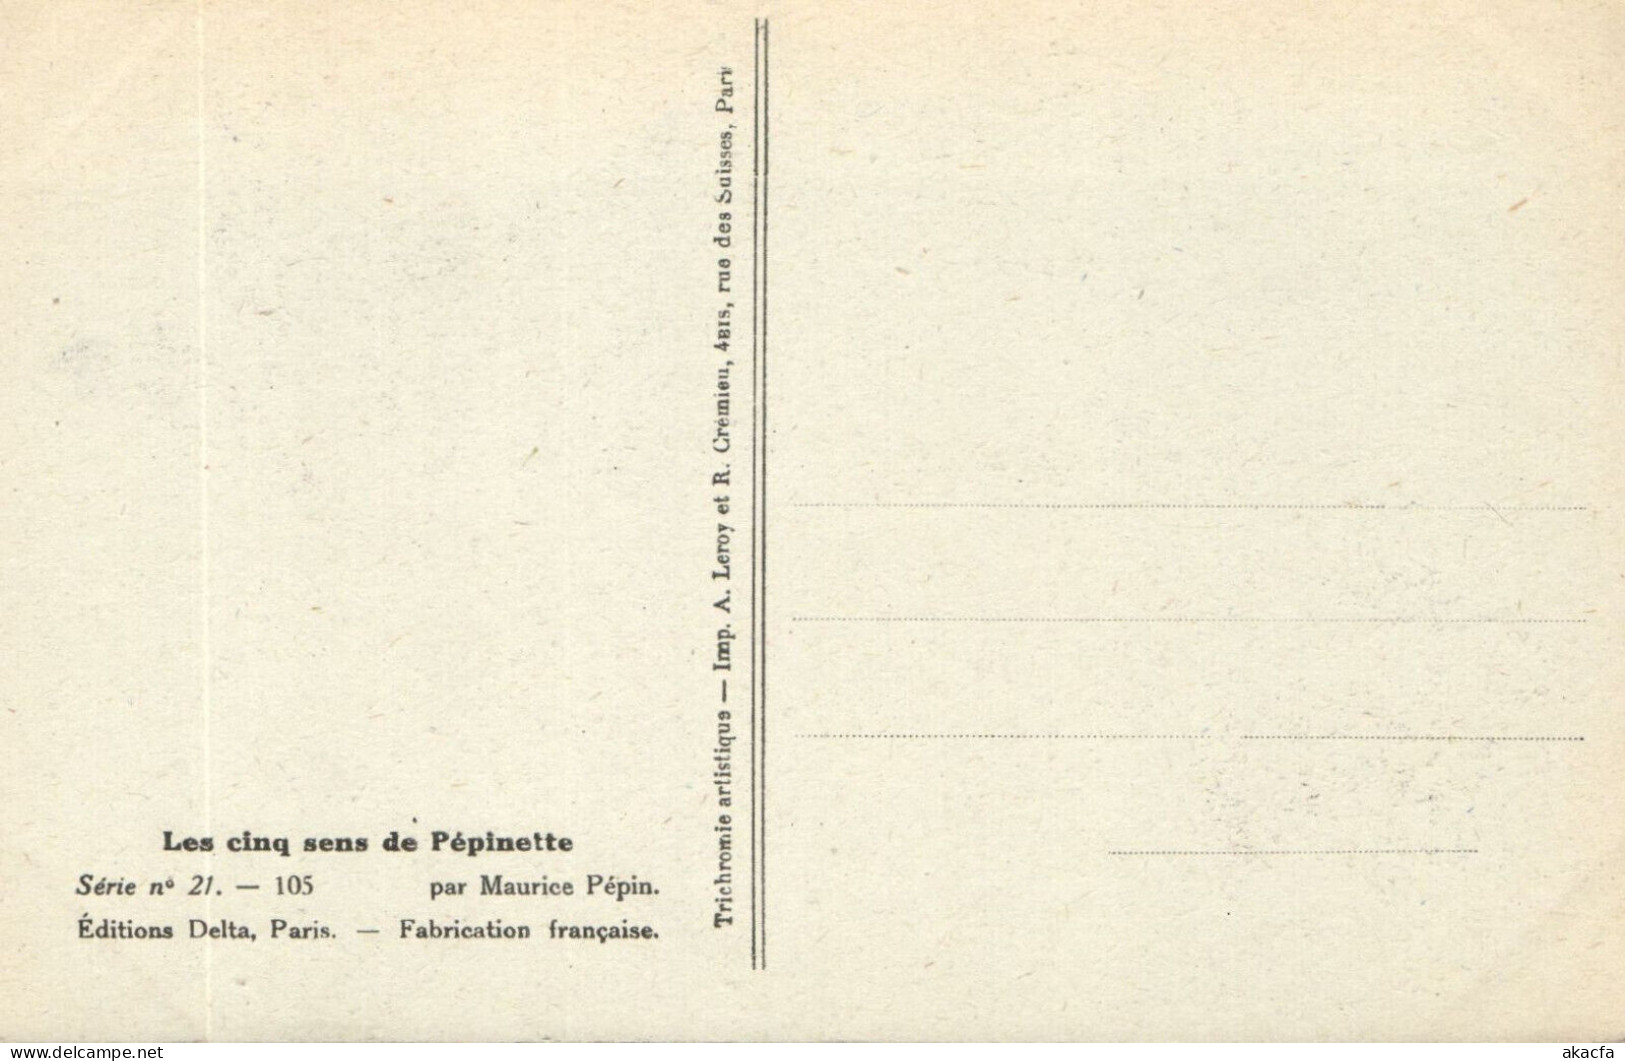 PC ARTIST SIGNED, M. PÉPIN, RISQUE, LES CINQ SENS, Vintage Postcard (b50551) - Pepin